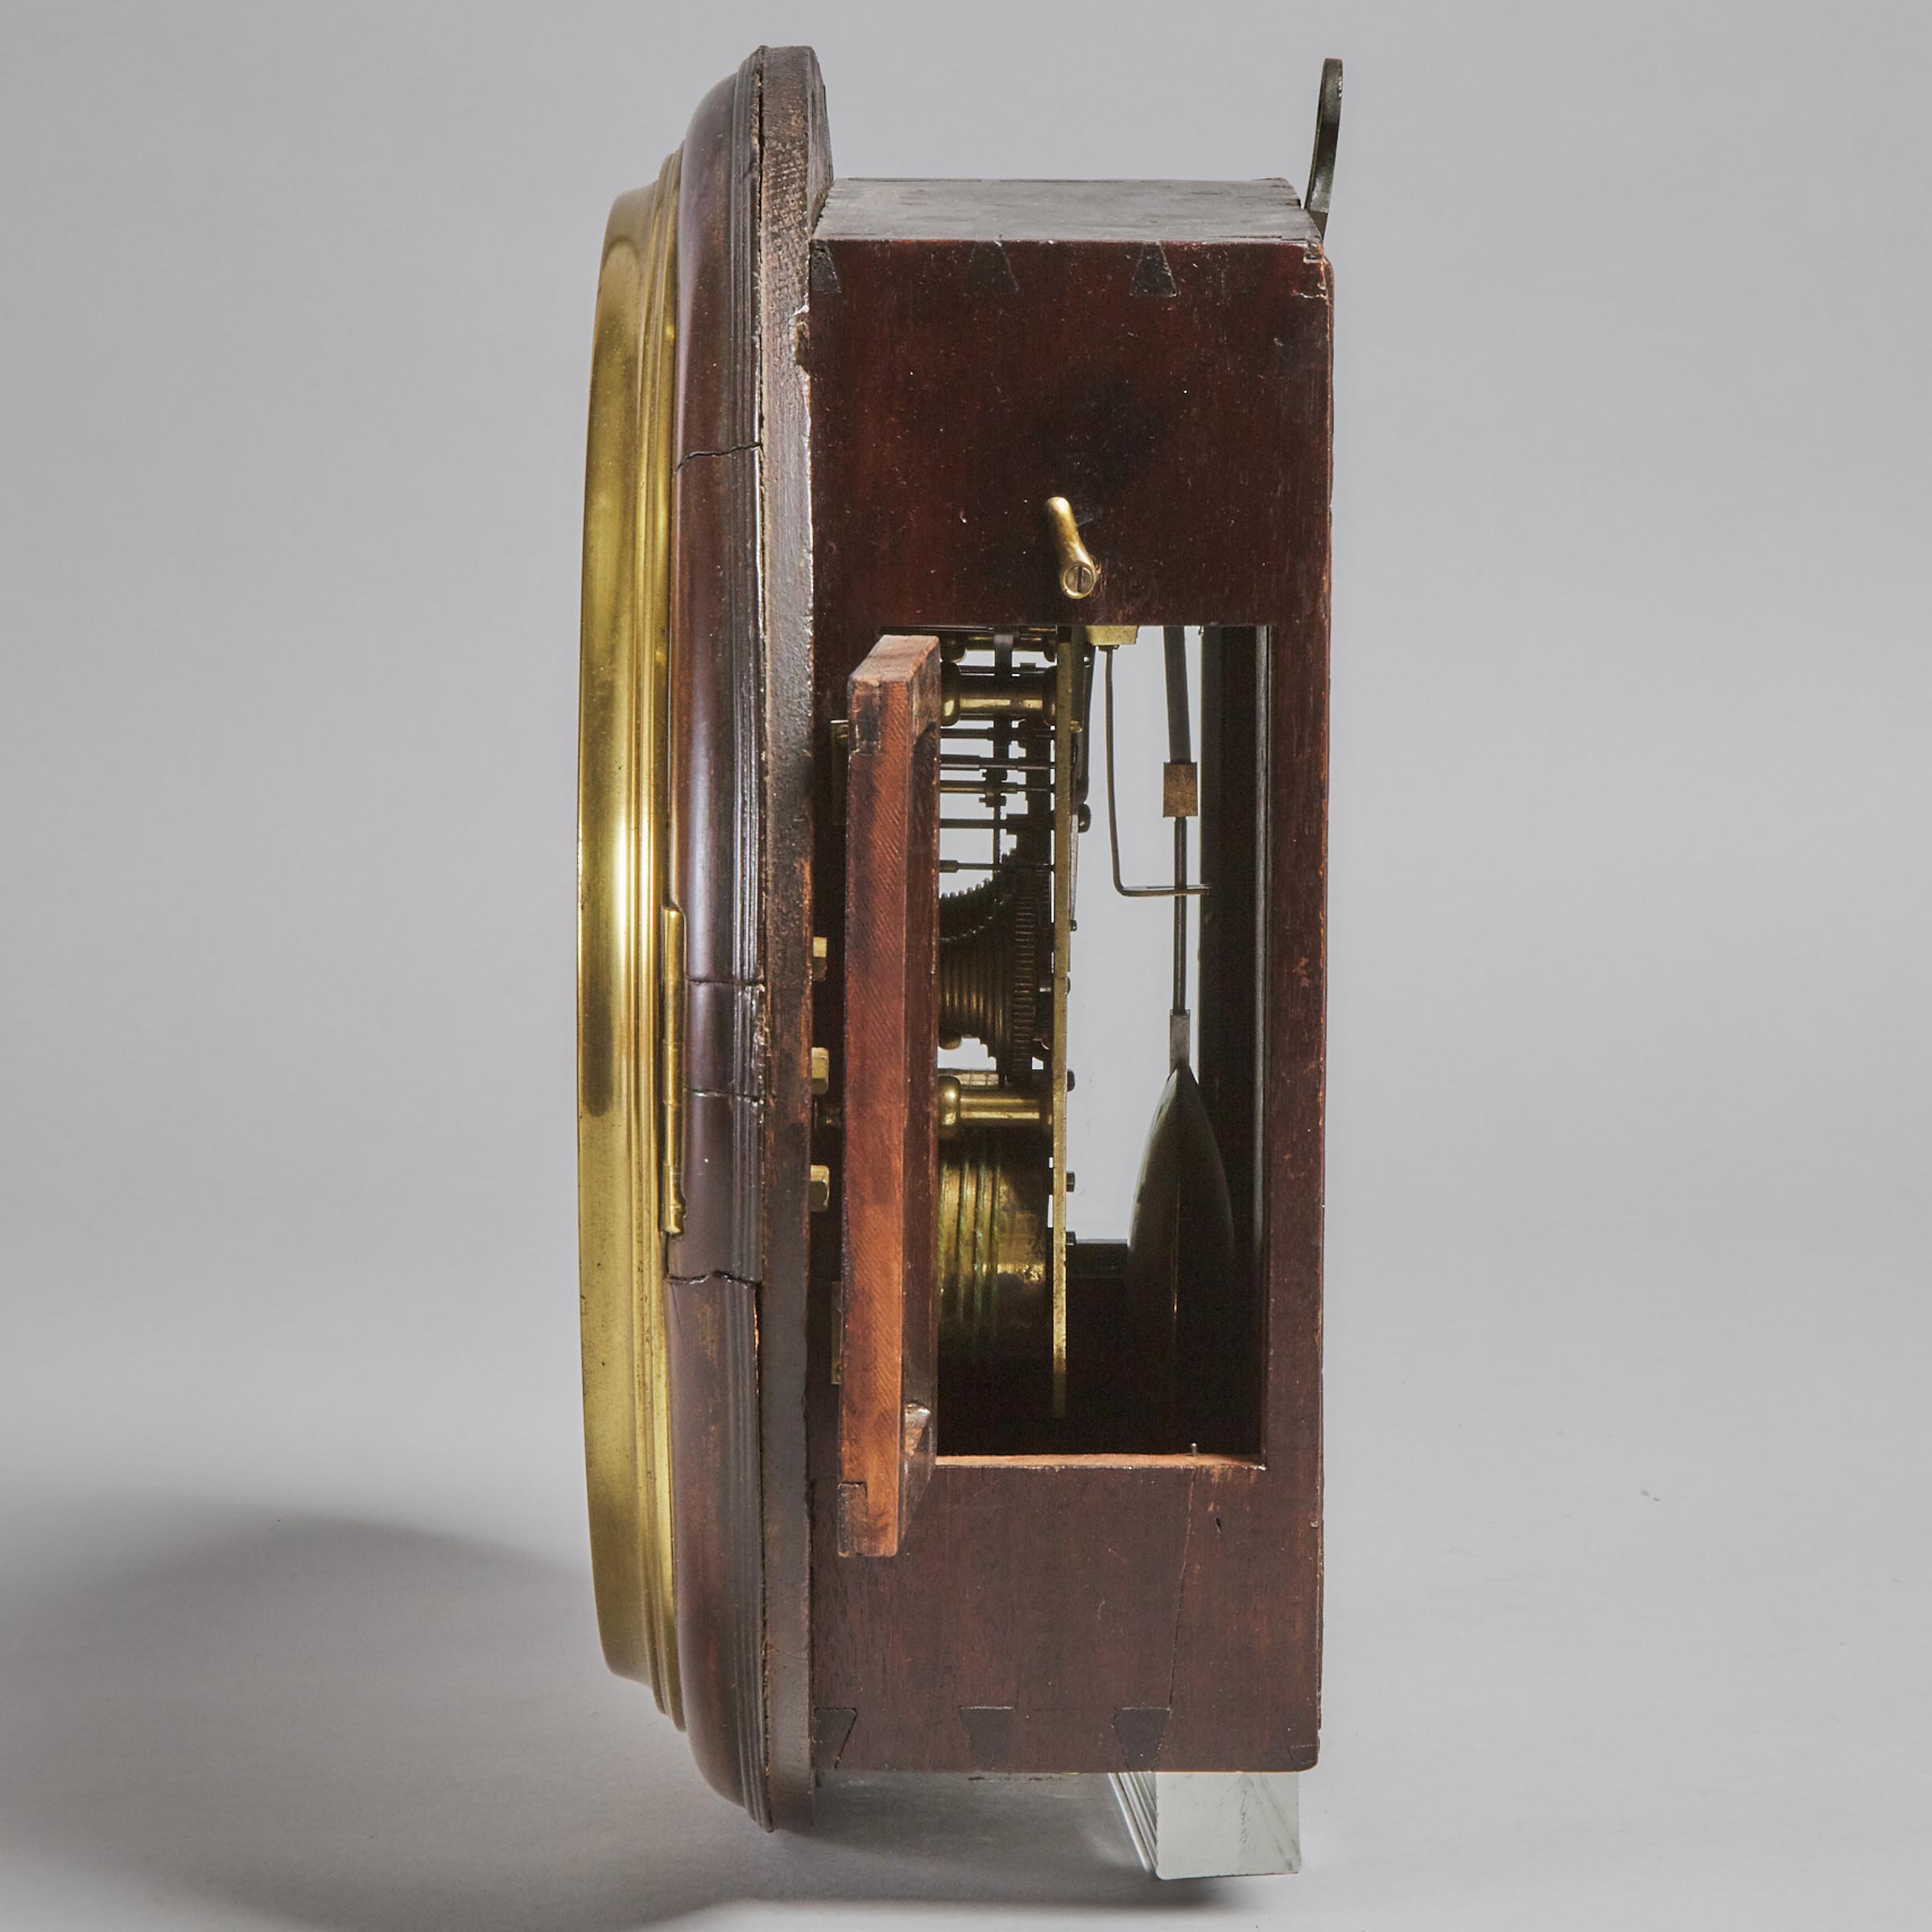 English Mahogany Dial Clock, Thomas Moss, London, late 18th/early 19th century